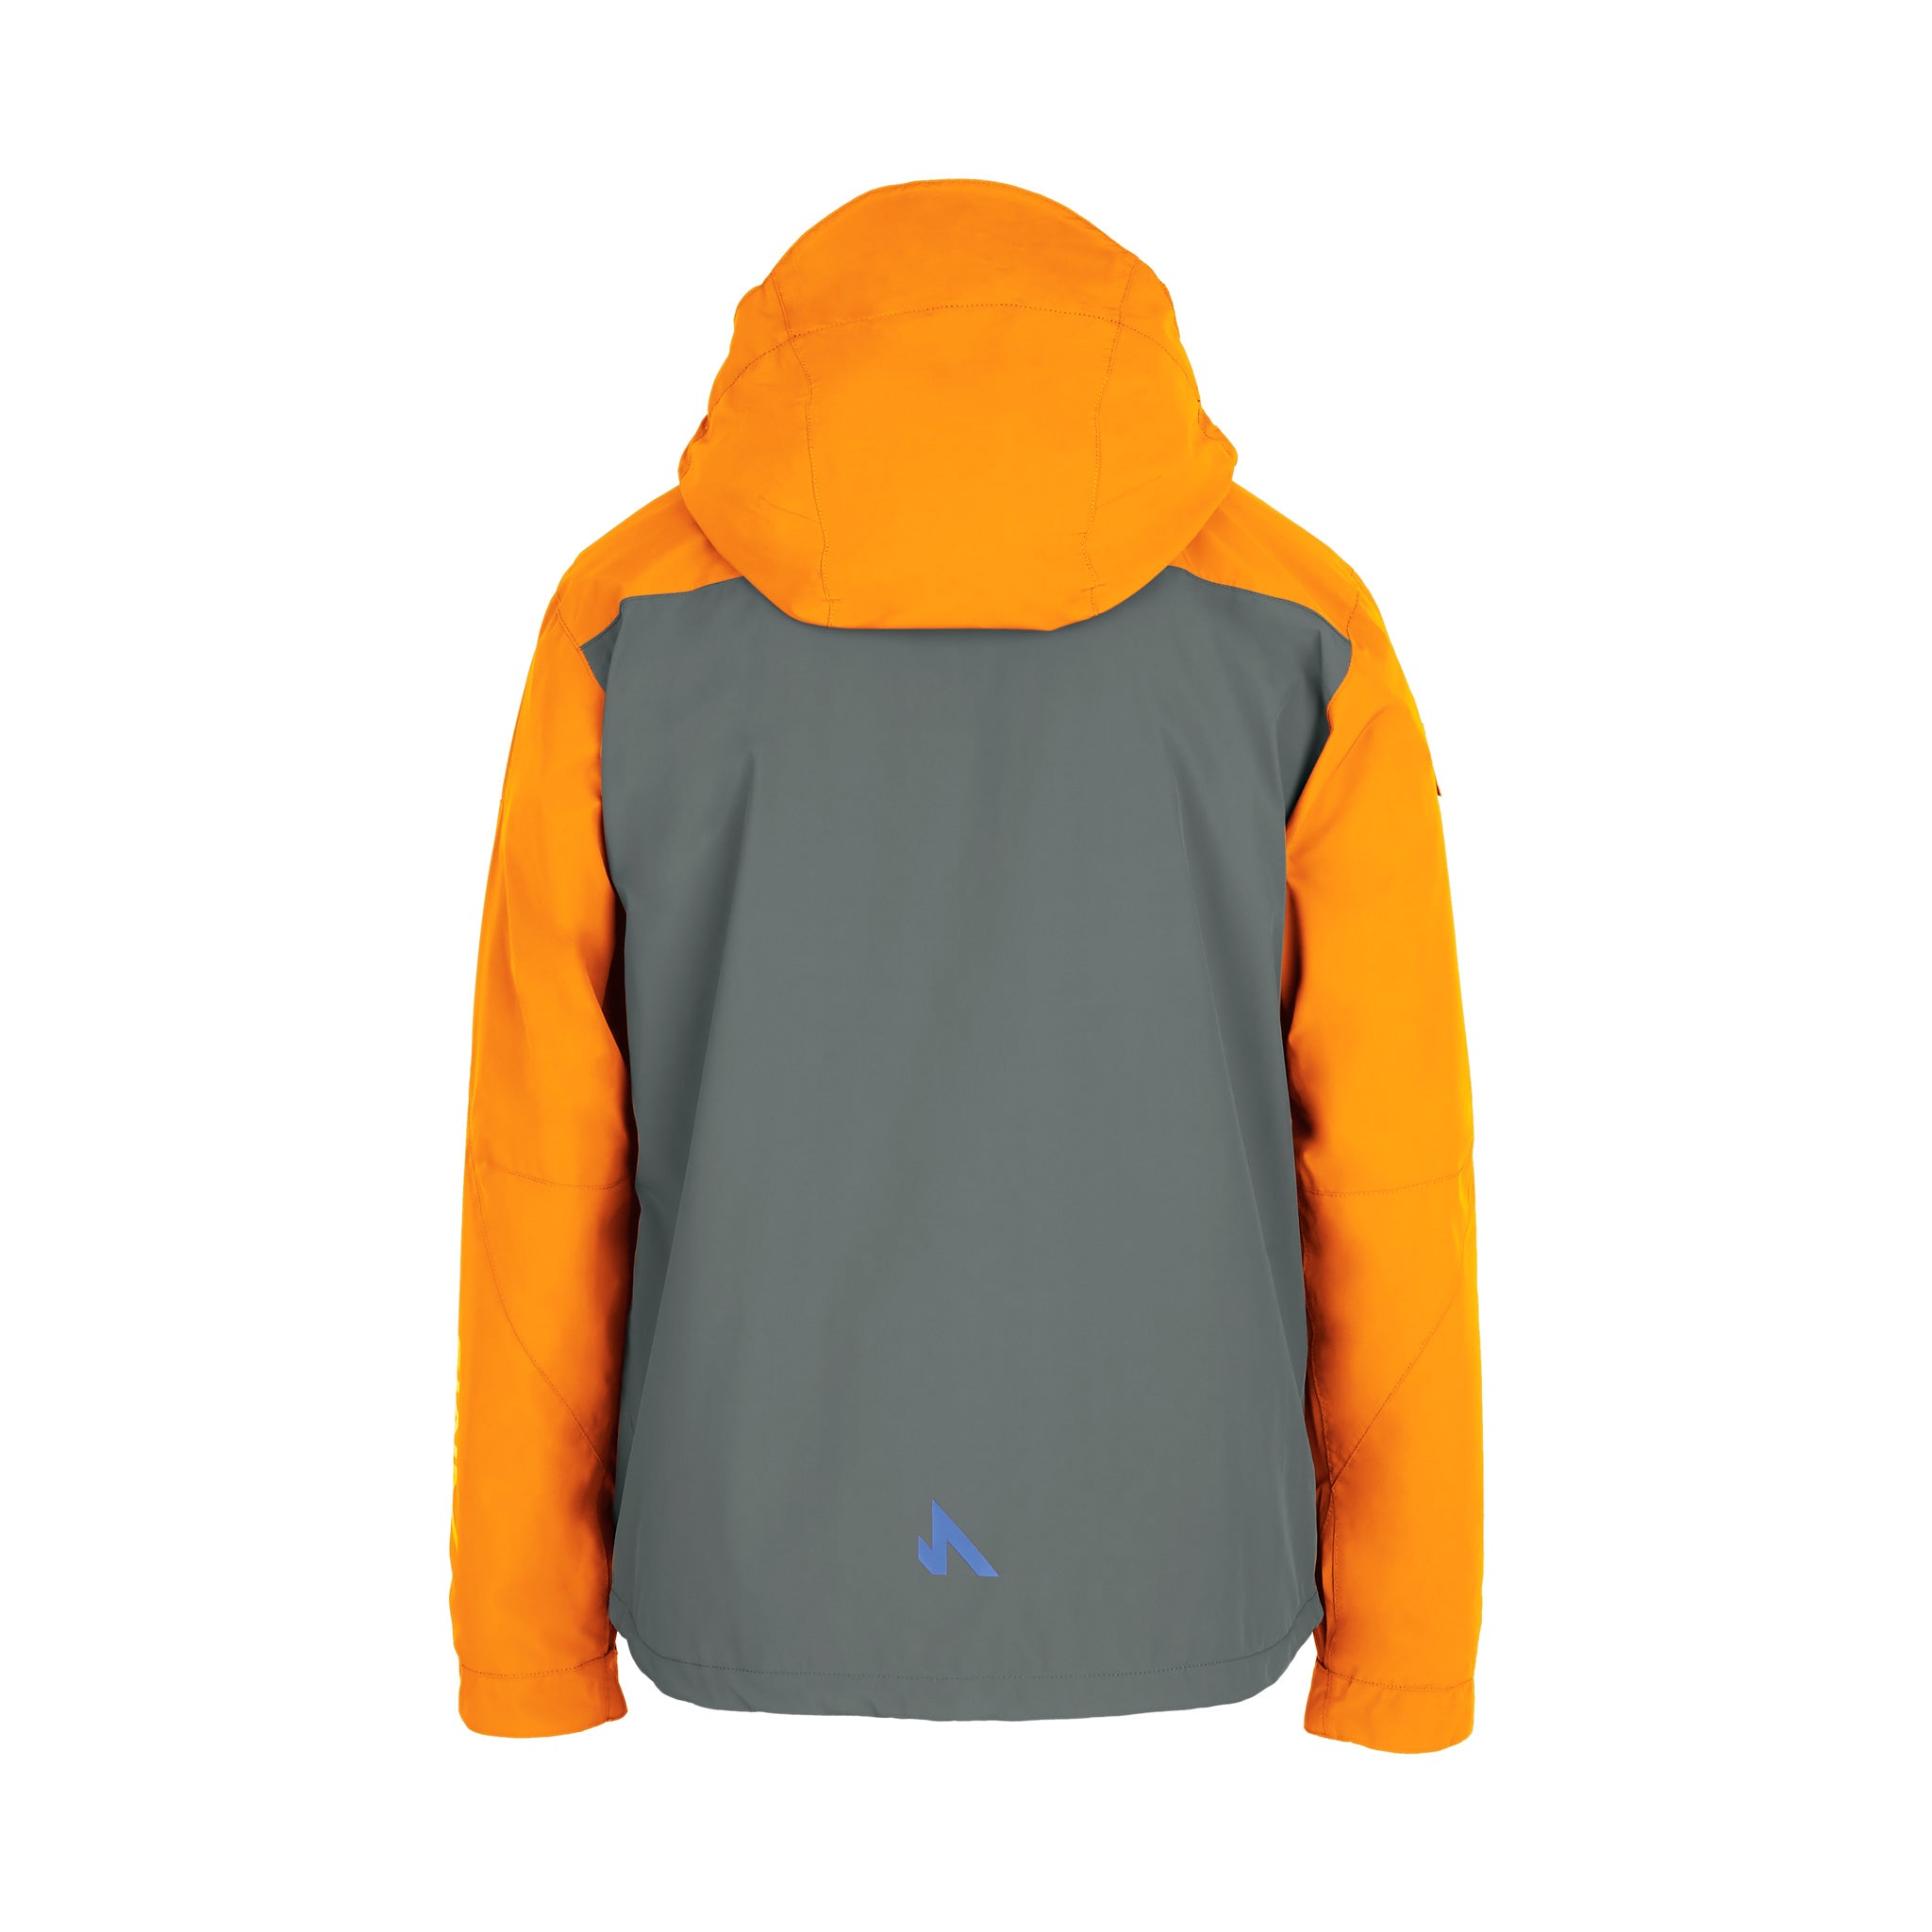 Protego Ski Jacket - Orange - Charcoal - Back